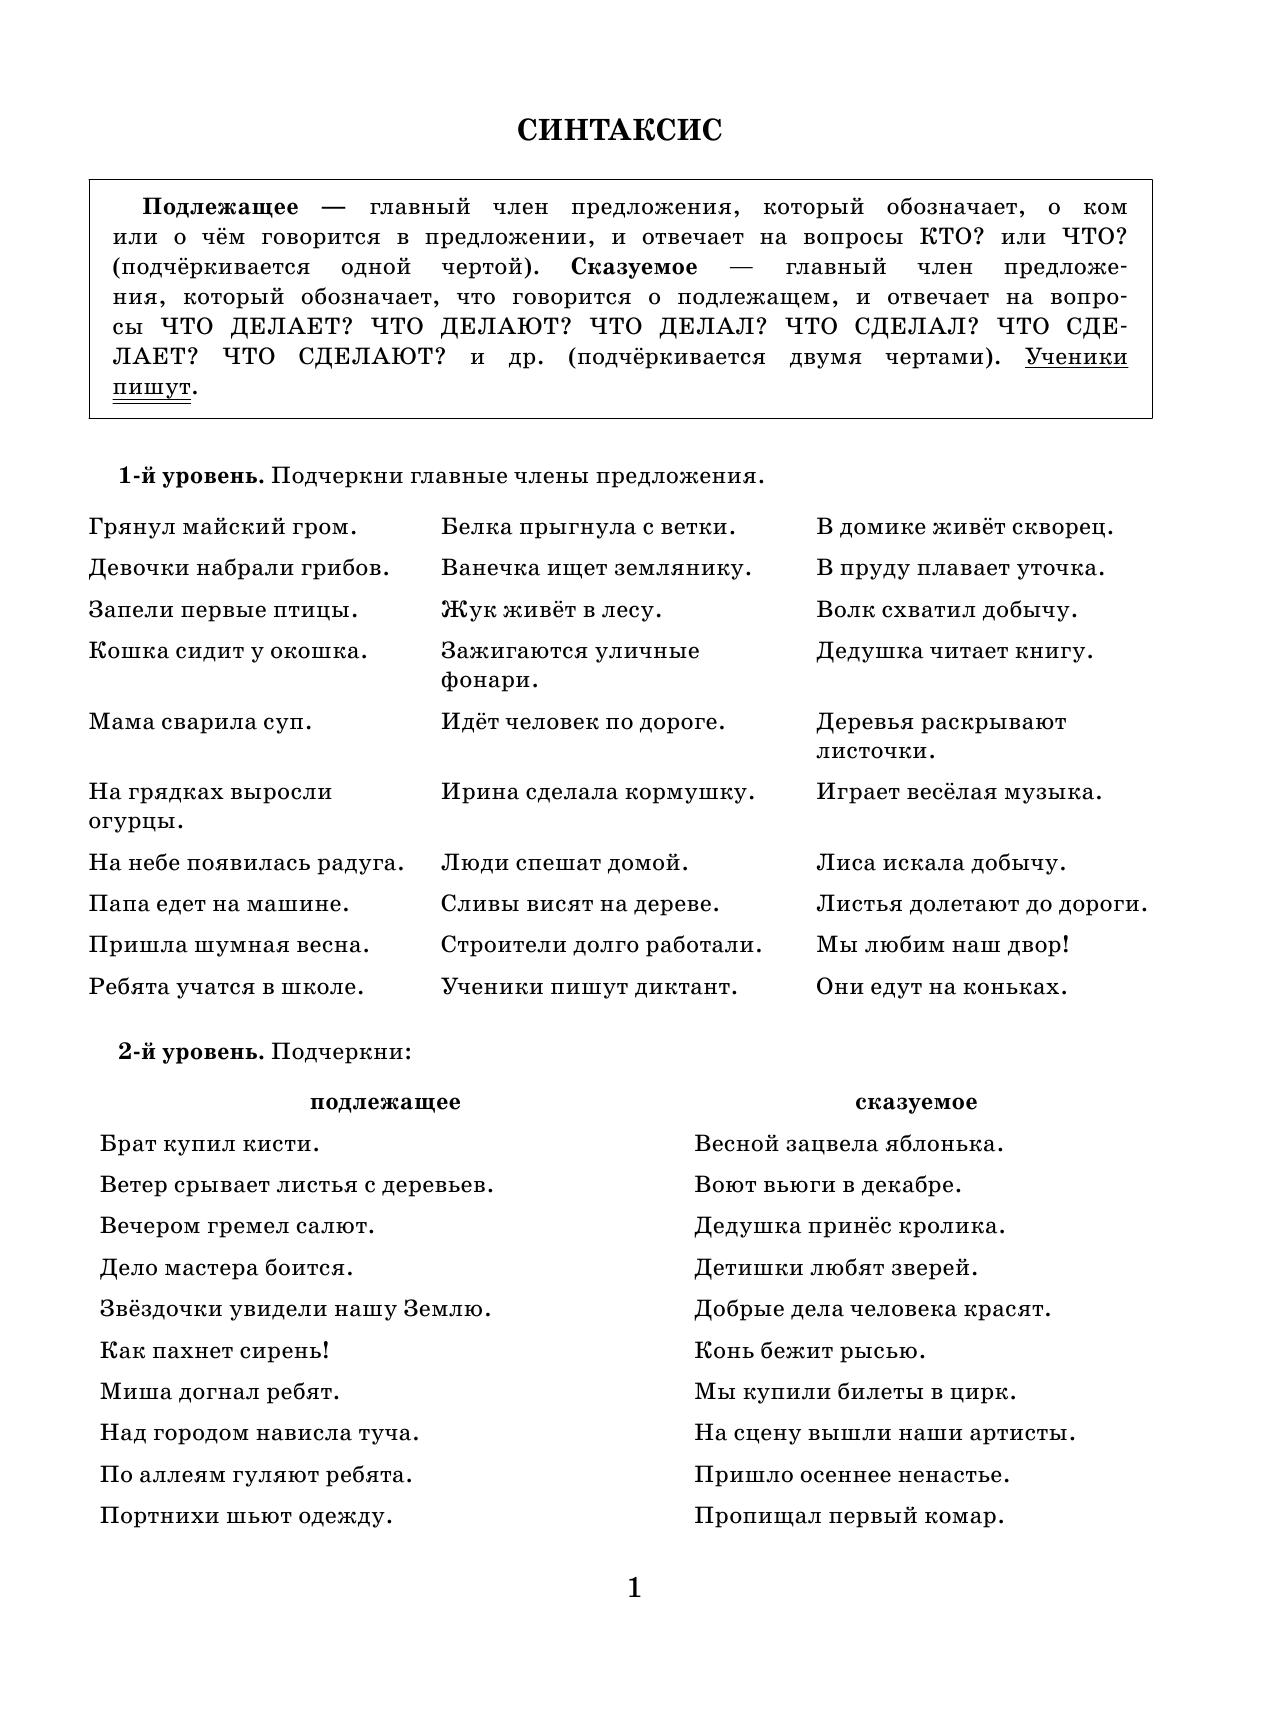 Русский язык. Самые нужные правила и упражнения. 2 класс